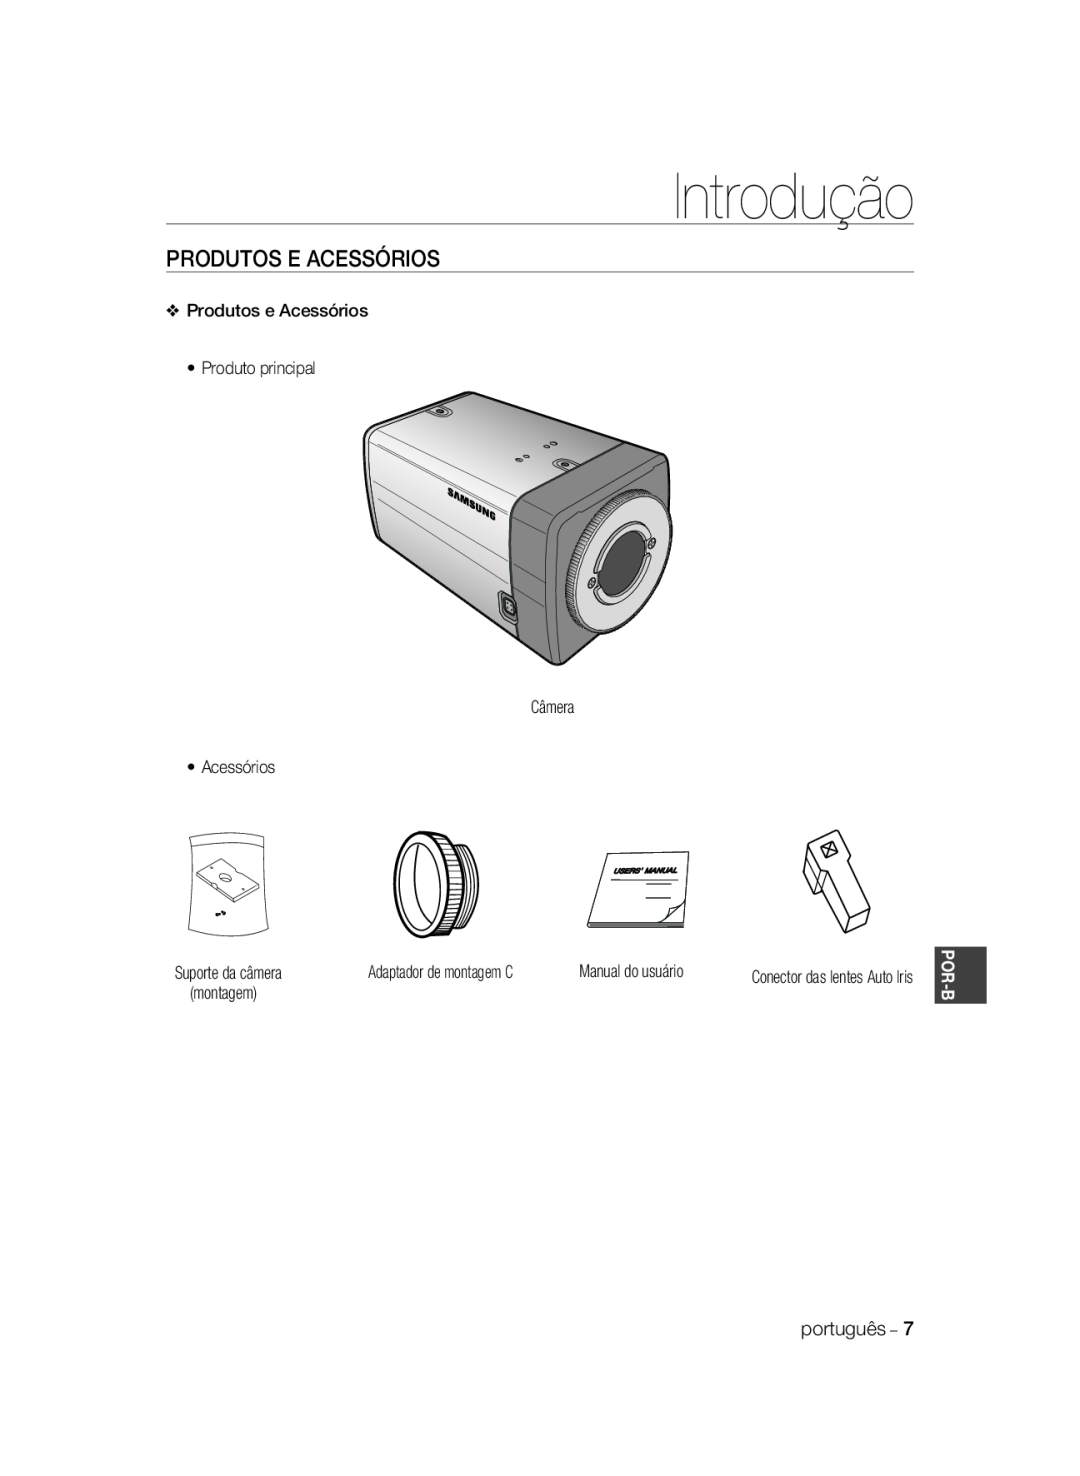 Samsung SCC-A2033P, SCC-A2333P manual Produtos E Acessórios, Introdução, Adaptador de montagem C, Por-B 